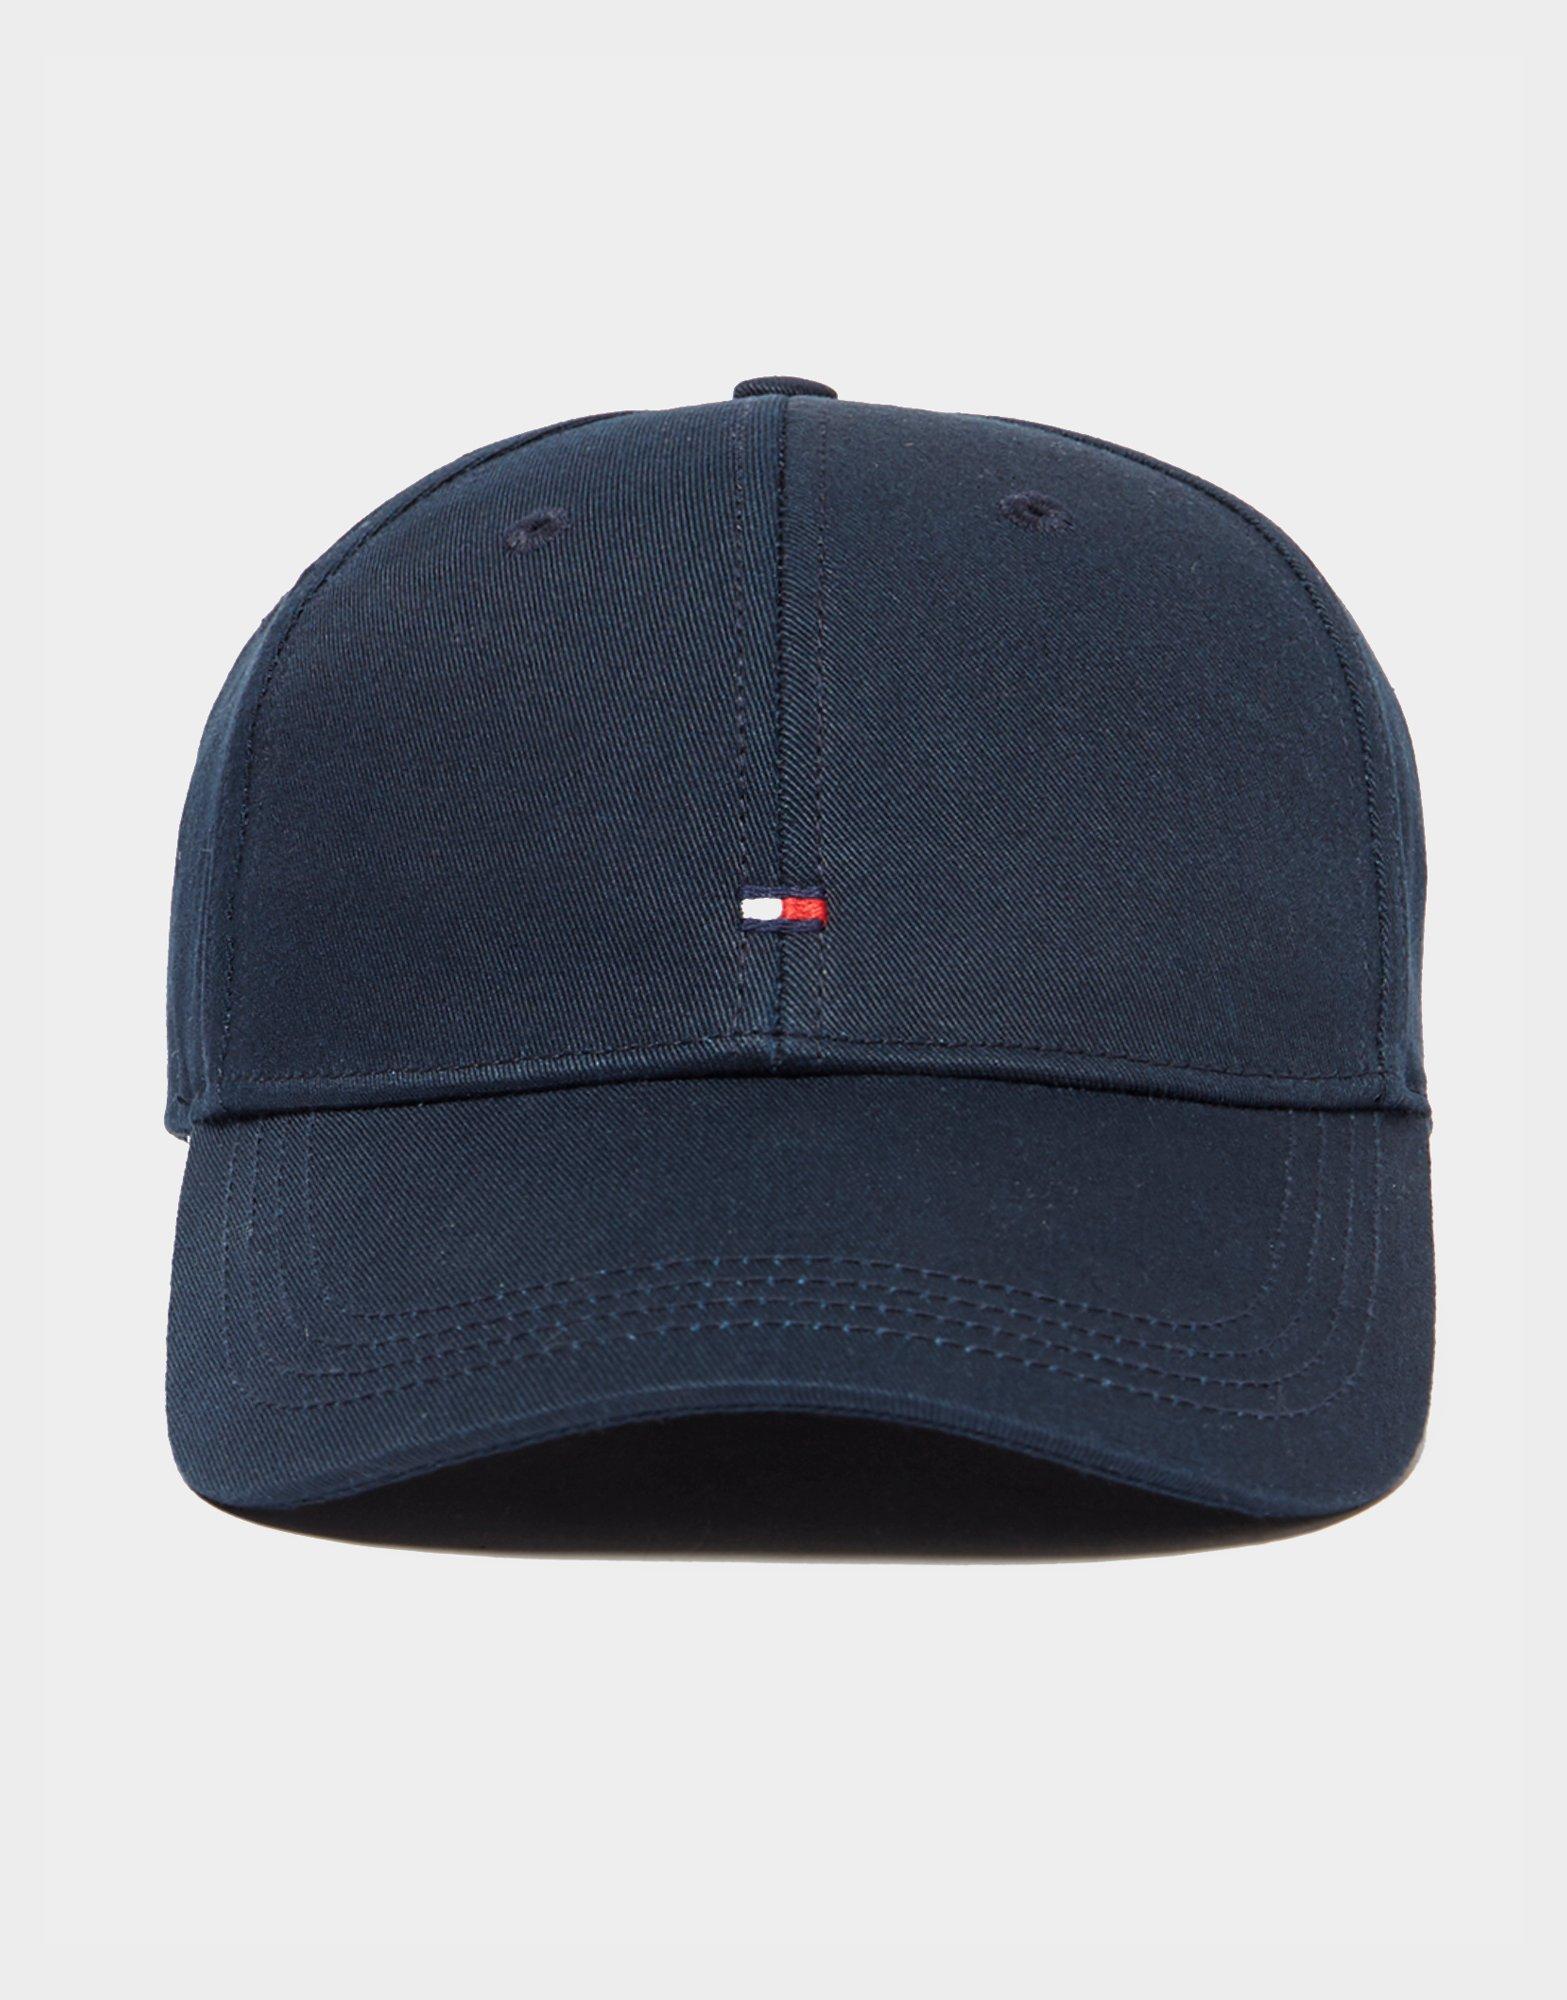 blue tommy hilfiger hat